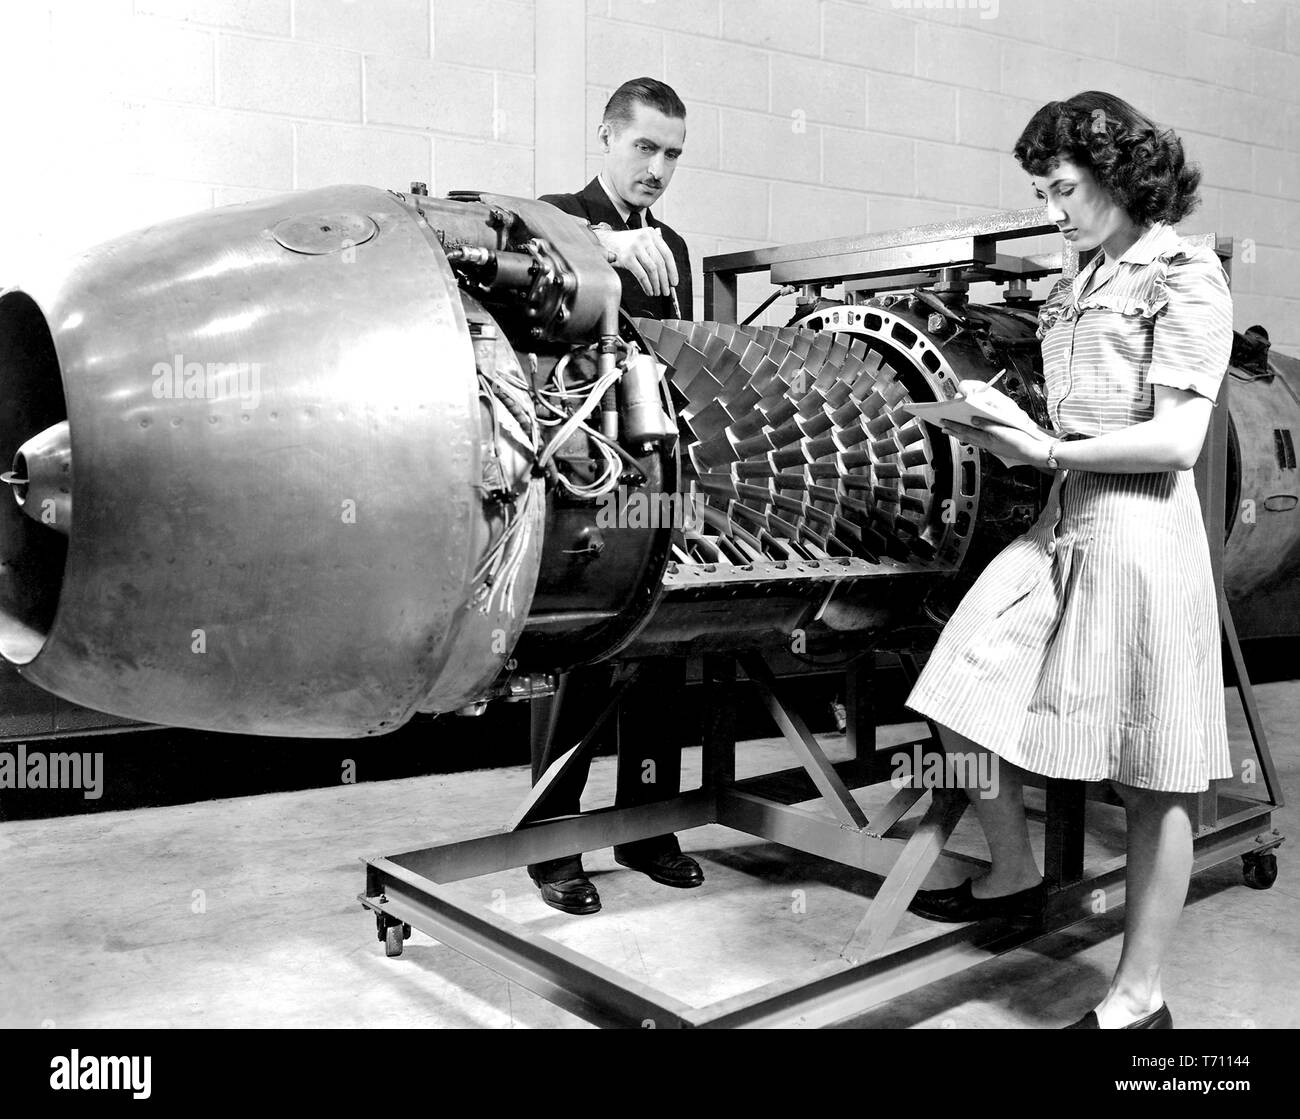 Los empleados de la NASA inspeccionando el Jumo 004 motor Jet con la tapa quitada al motor del avión laboratorio de investigación del Comité Consultivo Nacional para la aeronáutica (NACA), Cleveland, Ohio, el 24 de marzo de 1946. Imagen cortesía de la Administración Nacional de Aeronáutica y del Espacio (NASA). () Foto de stock